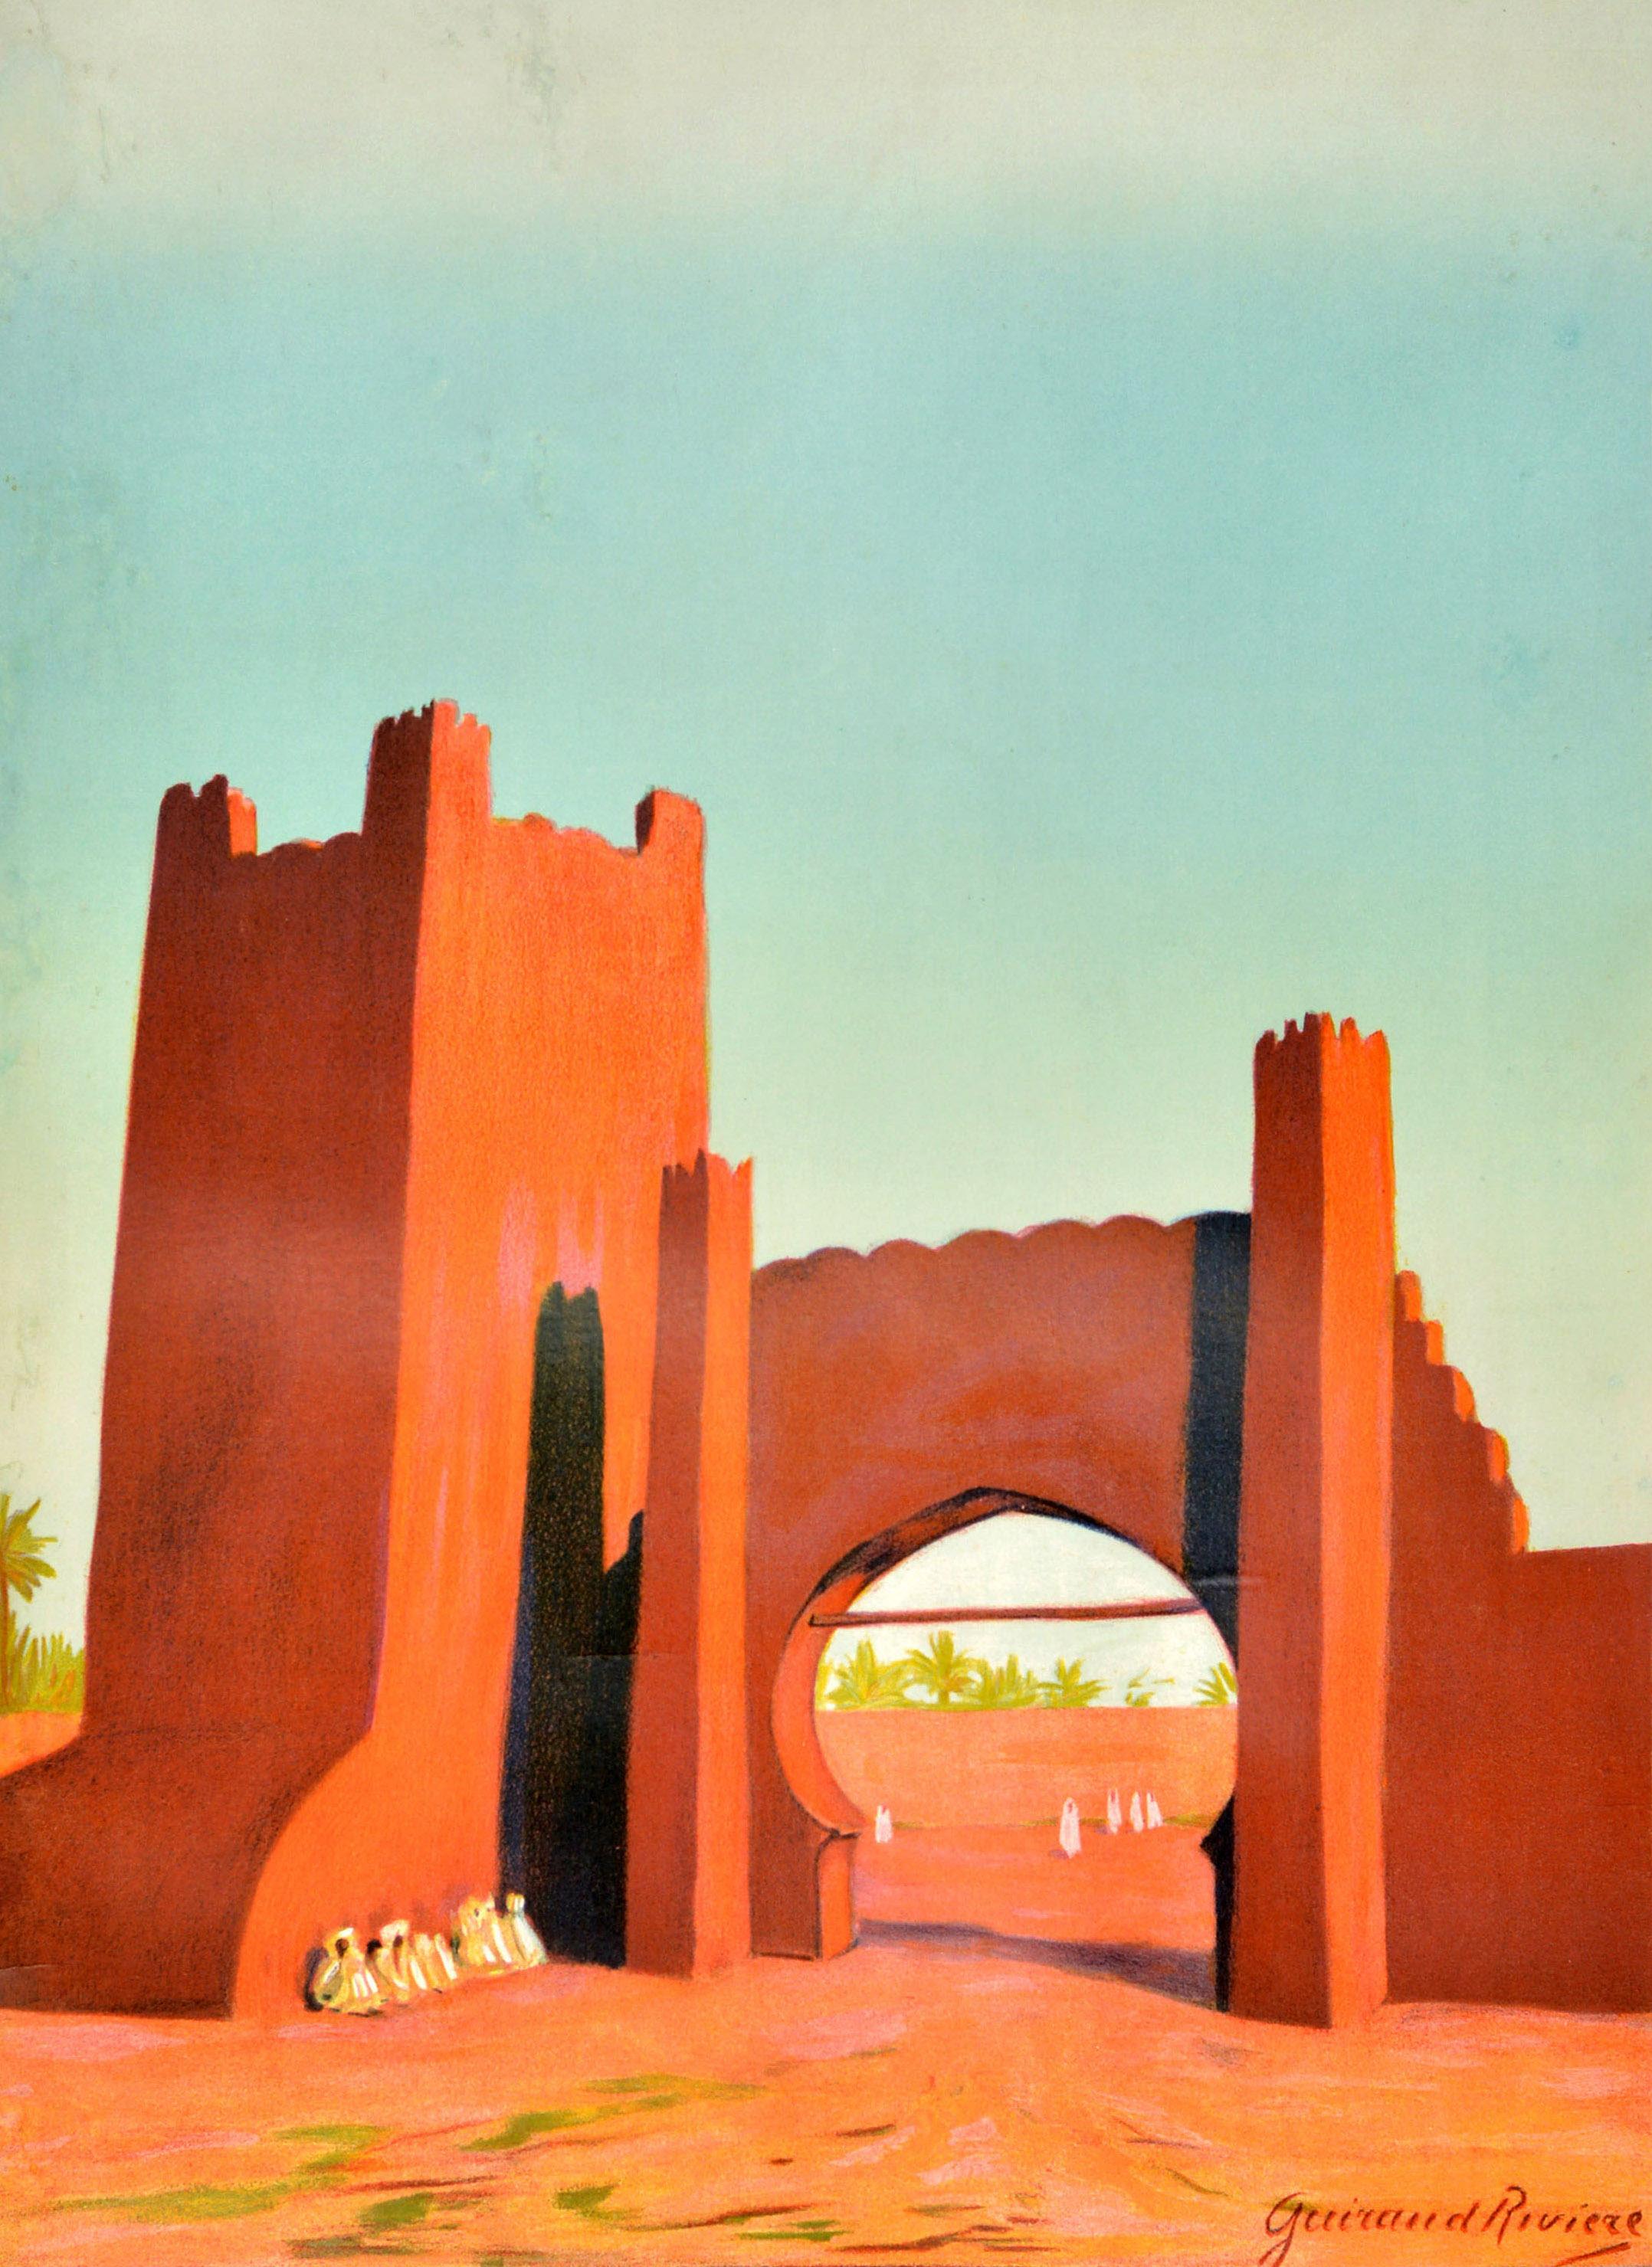 Affiche originale de voyage en train - Chemins de Fer du Maroc - comportant une image étonnante de l'affichiste et sculpteur Maurice Guiraud-Riviere (1881-1967) représentant des personnes assises à côté d'une tour de muraille et d'autres personnes